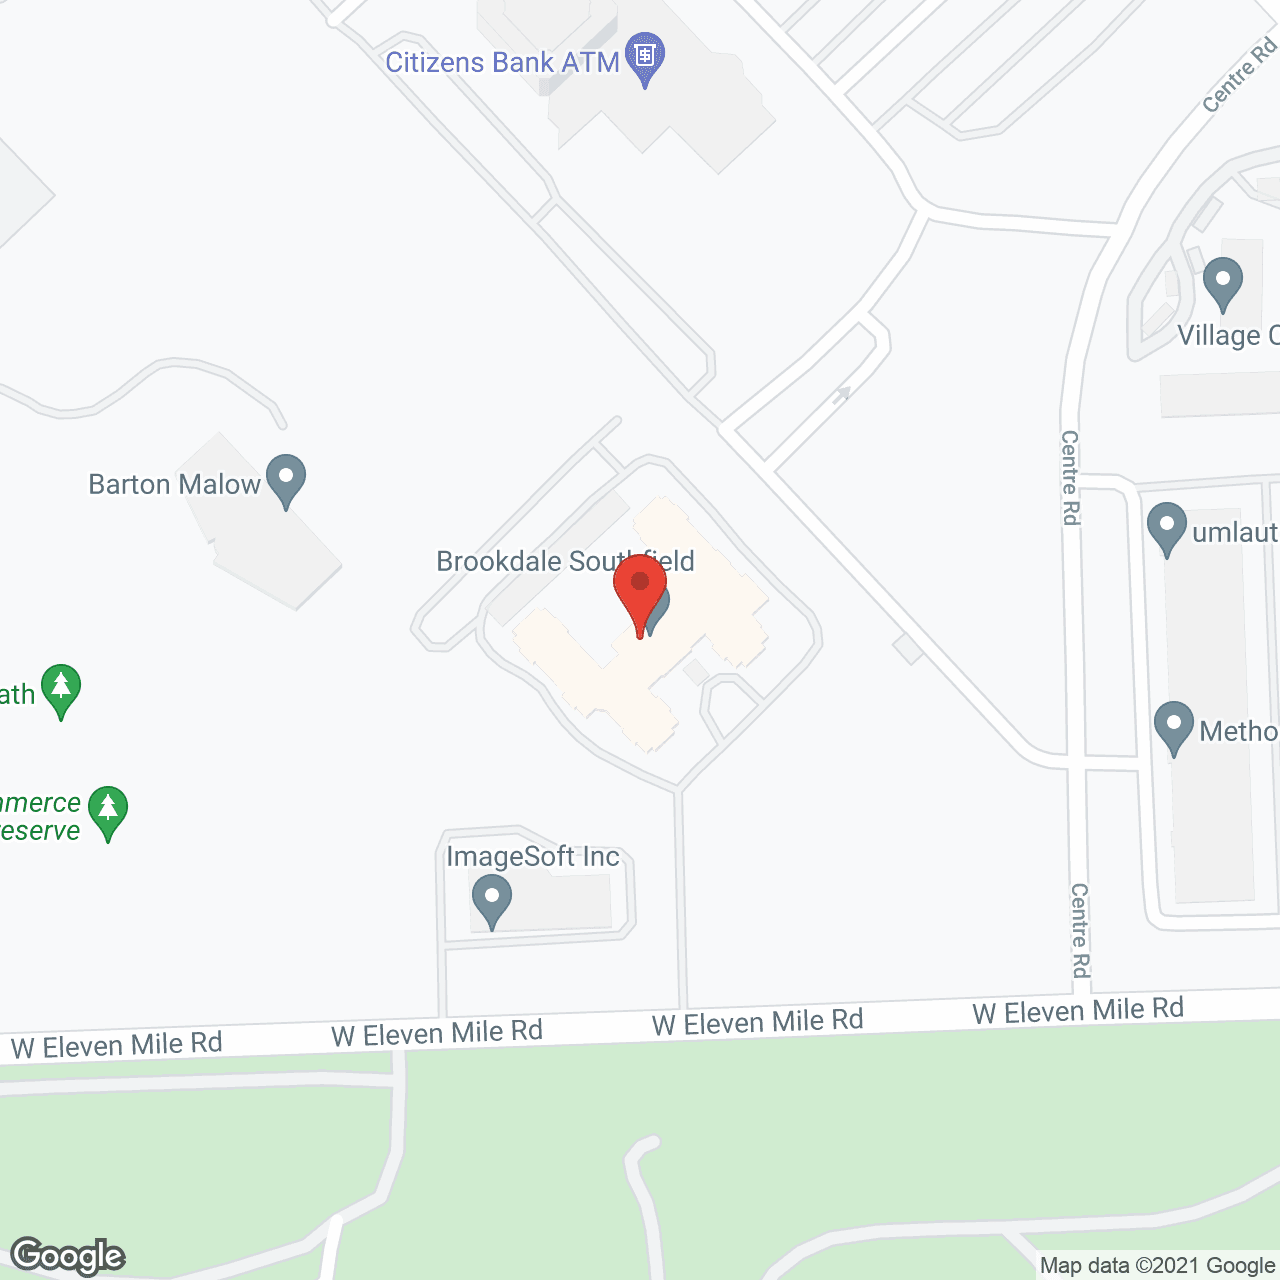 Brookdale Southfield in google map